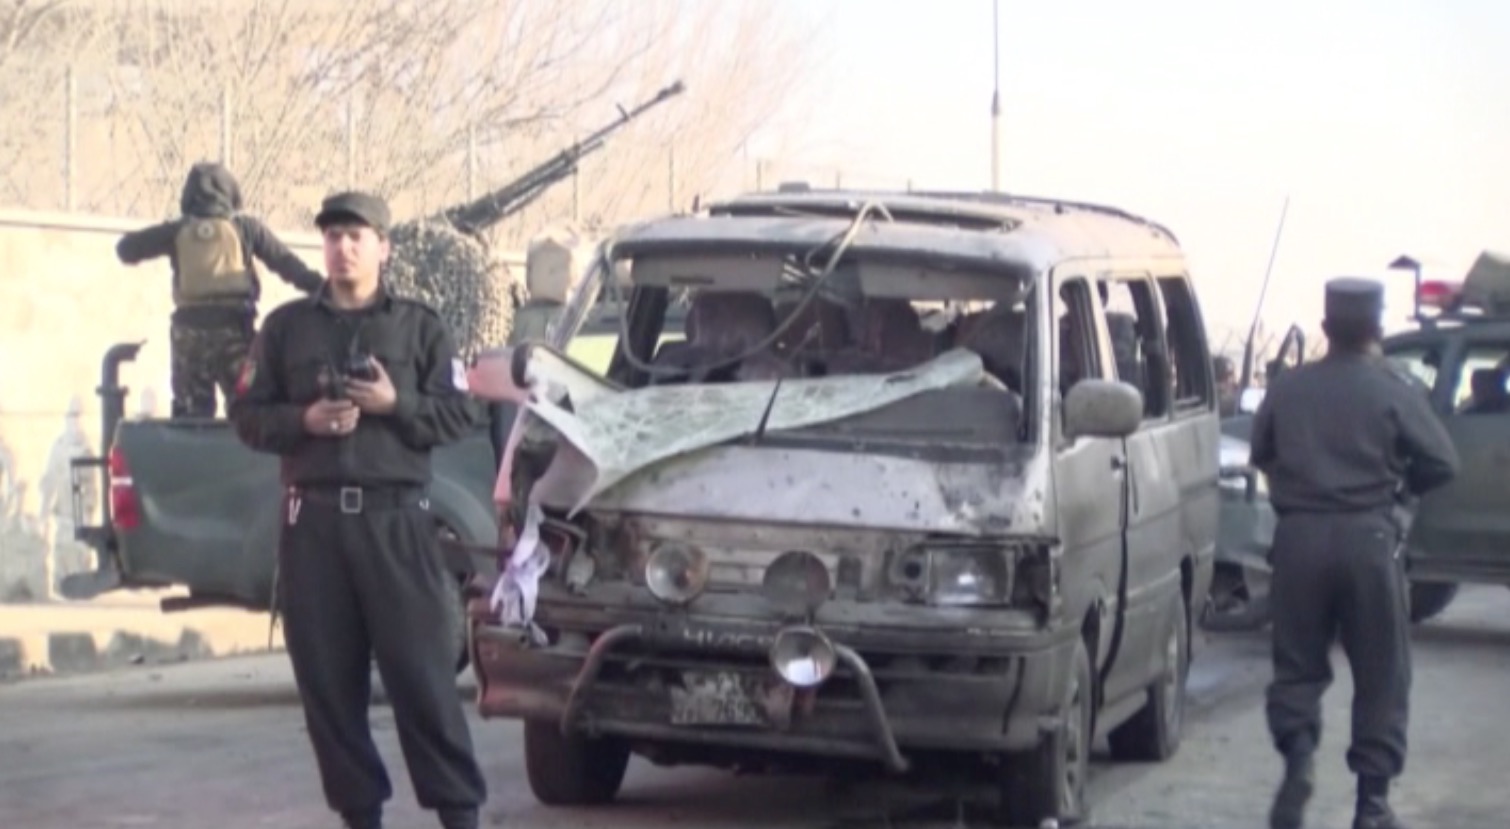 بالفيديو: طالبان تعلن مسؤوليتها عن تفجير سيارة بالقرب من مطار كابول - CNNArabic.com